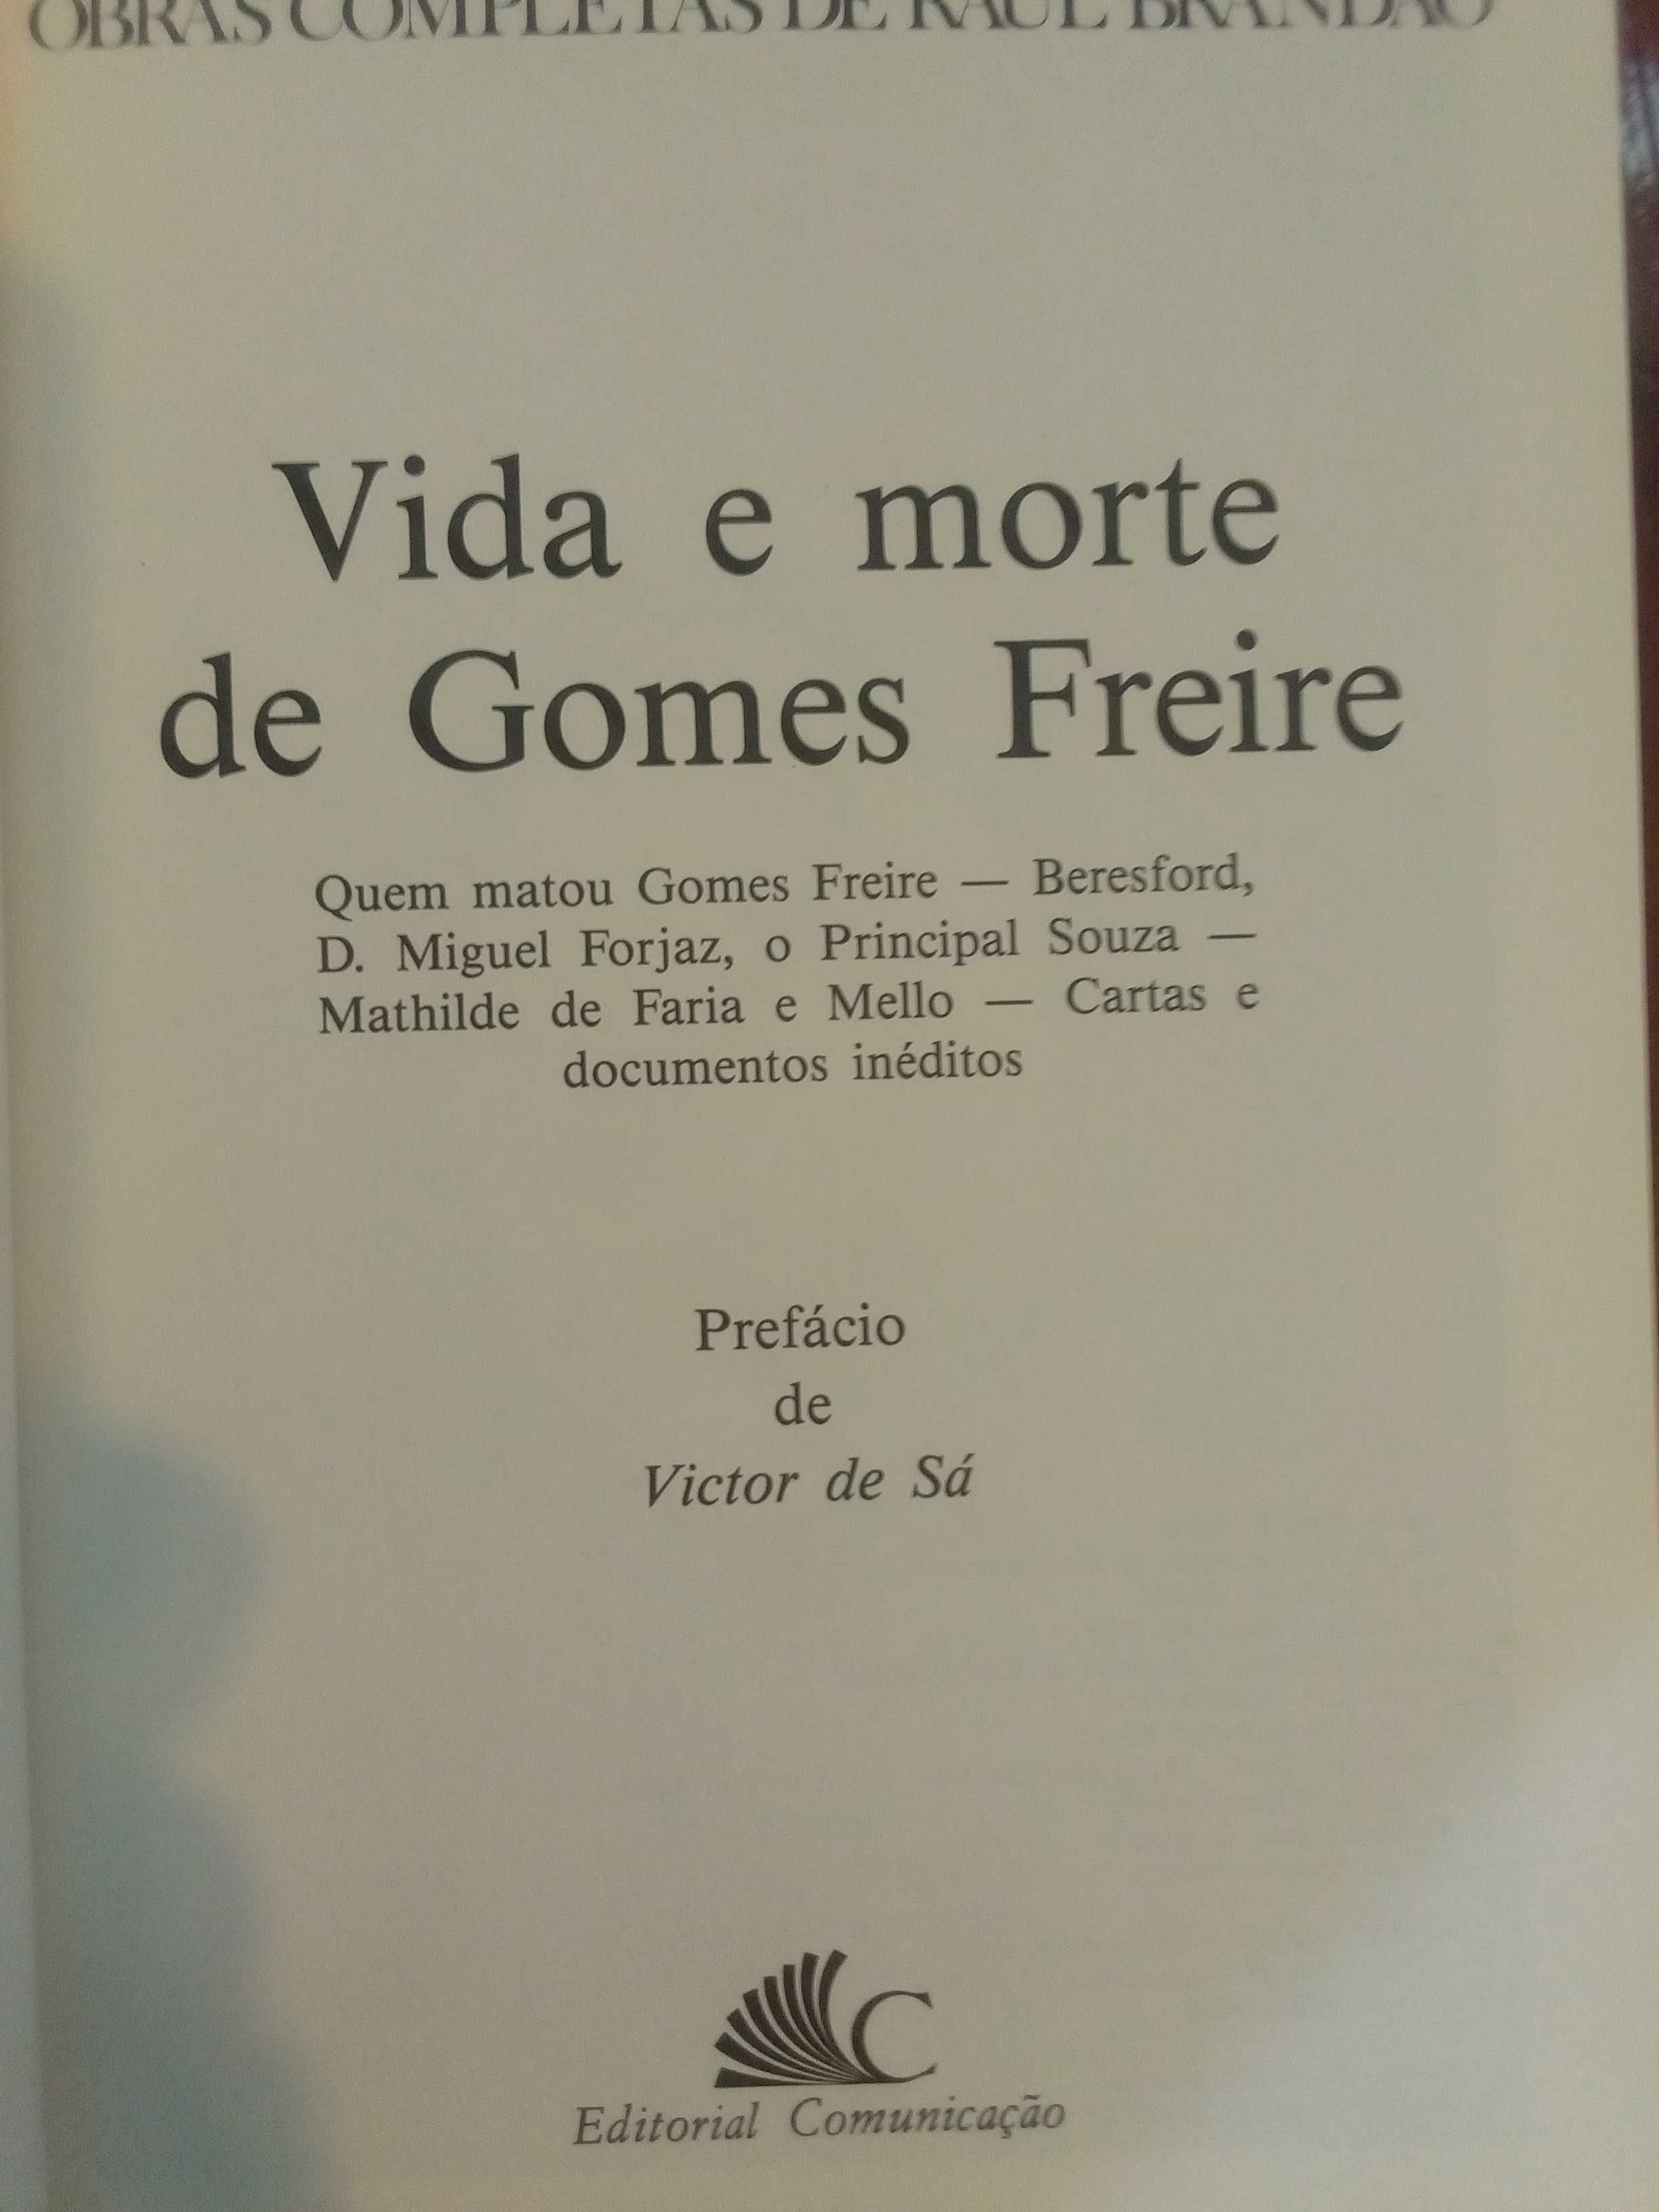 Raul Brandão - Vida e morte de Gomes Freire